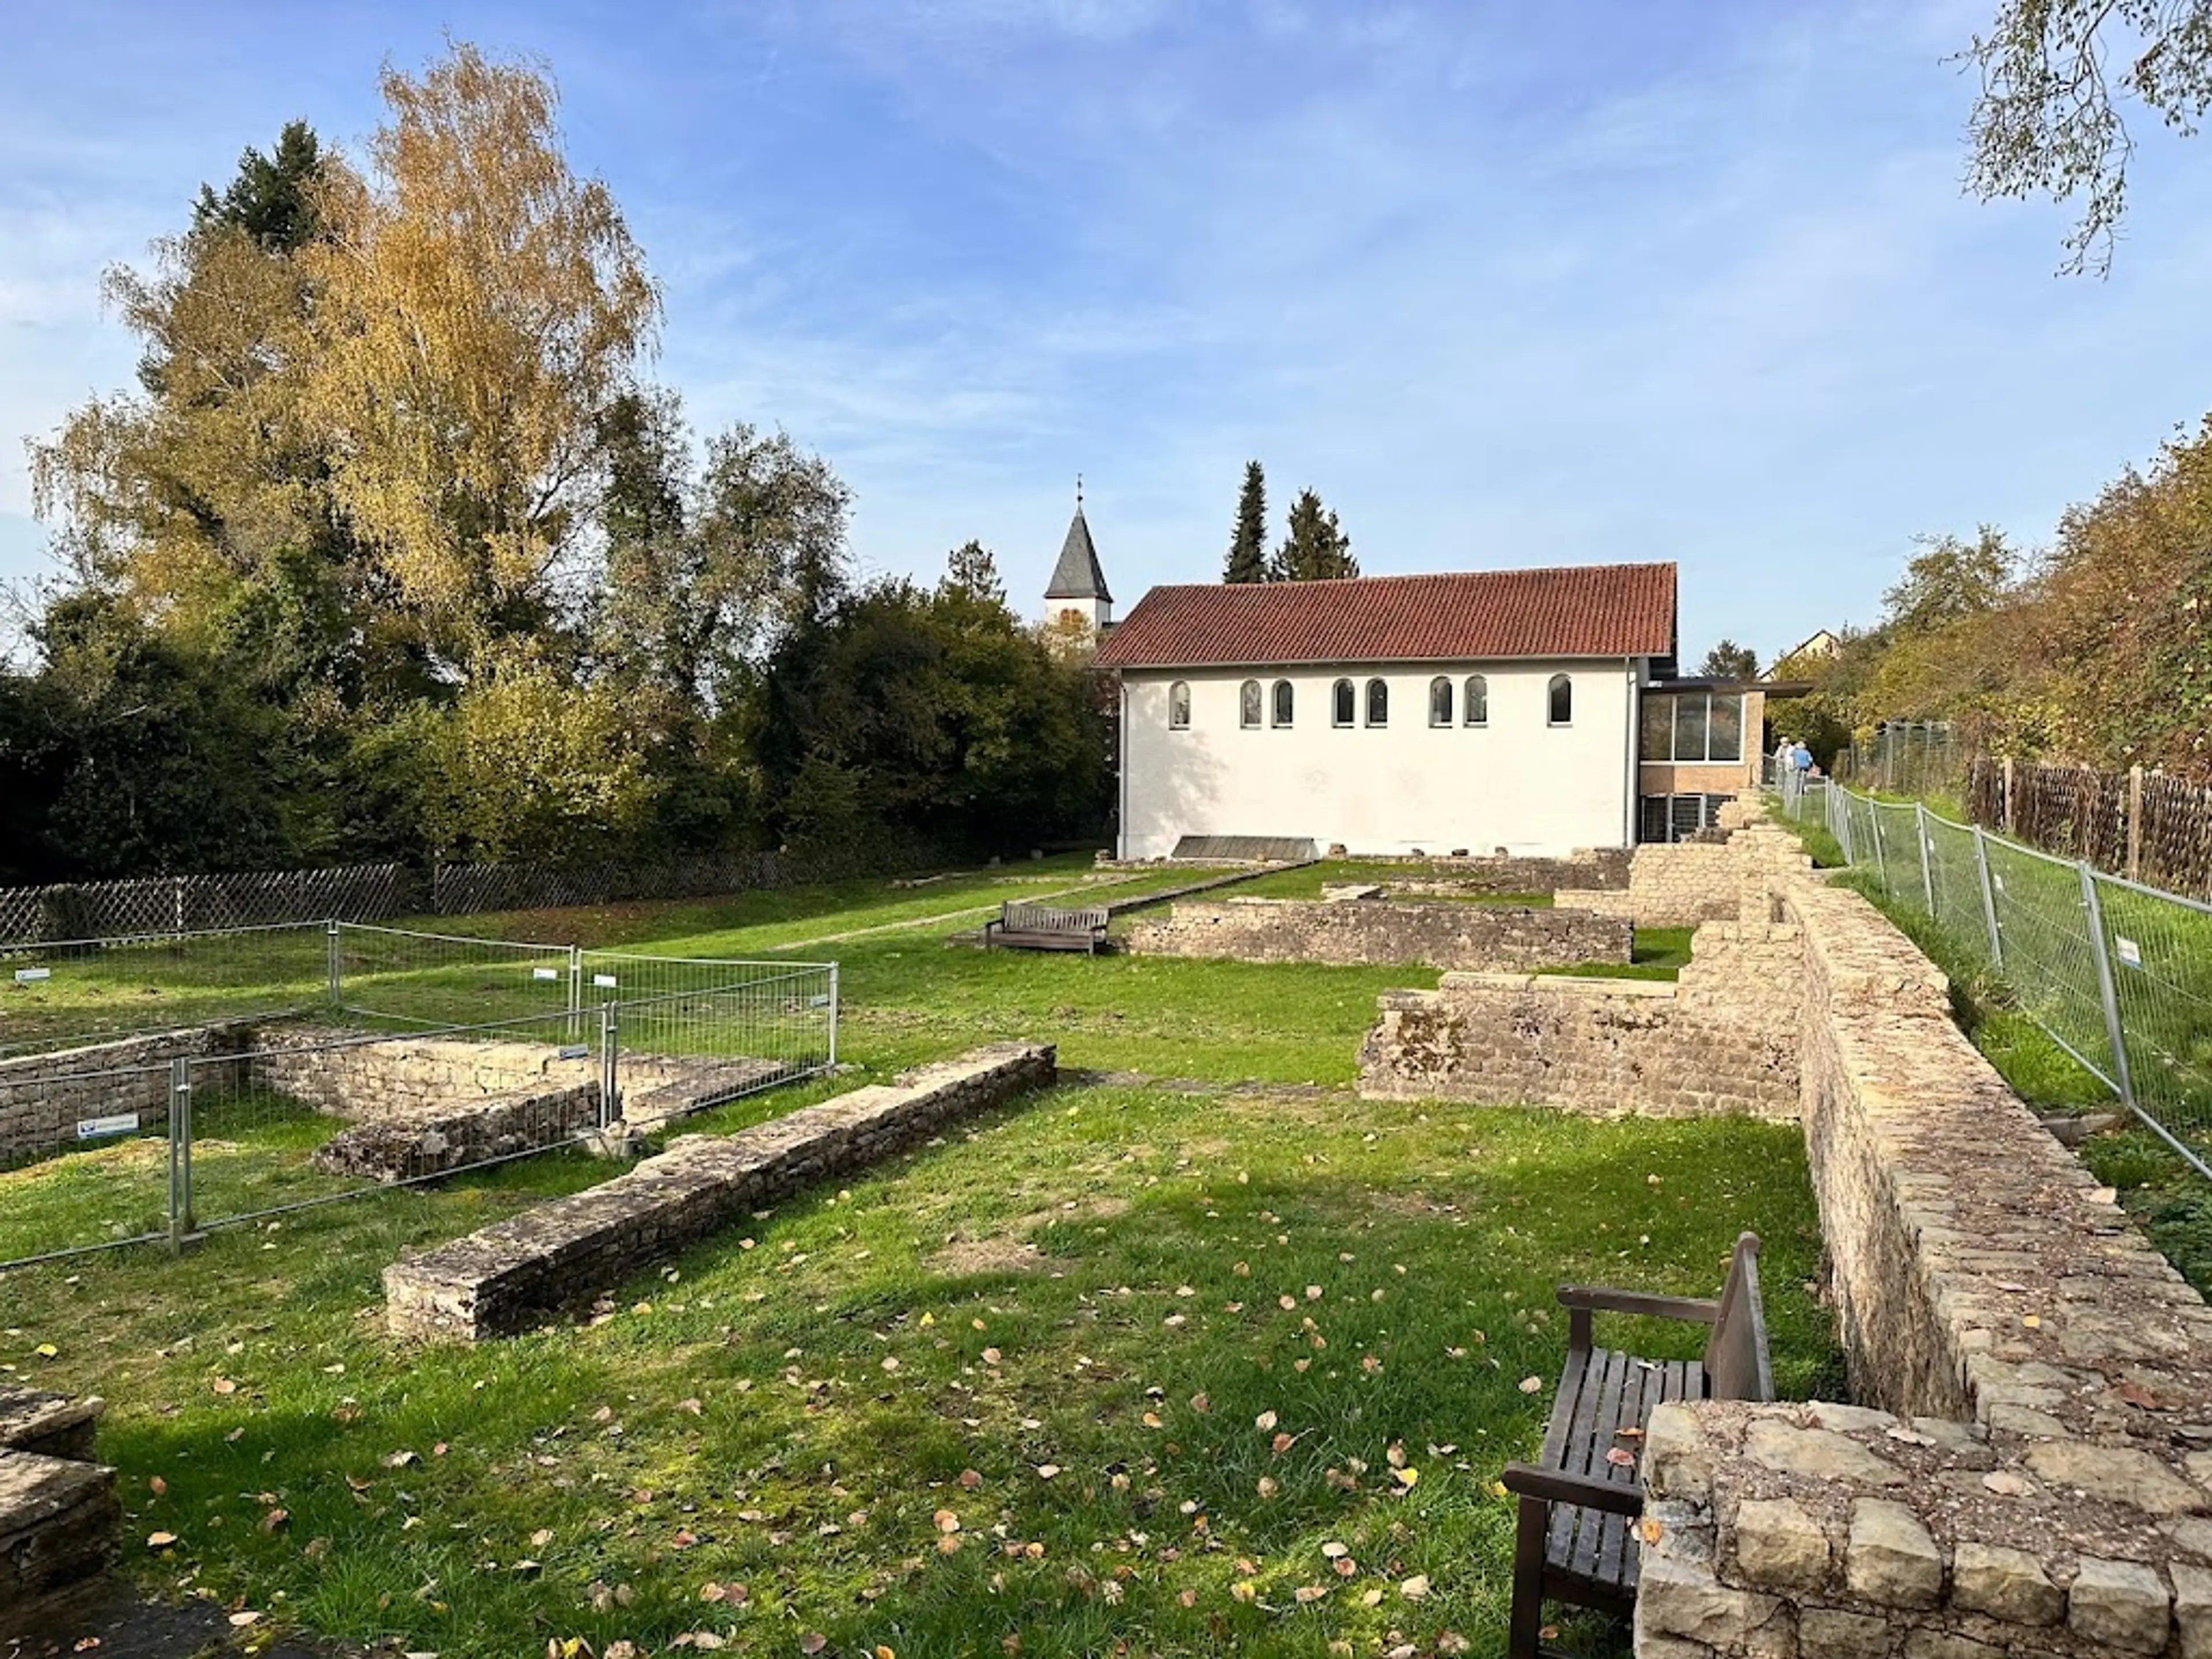 Roman Villa in Nennig